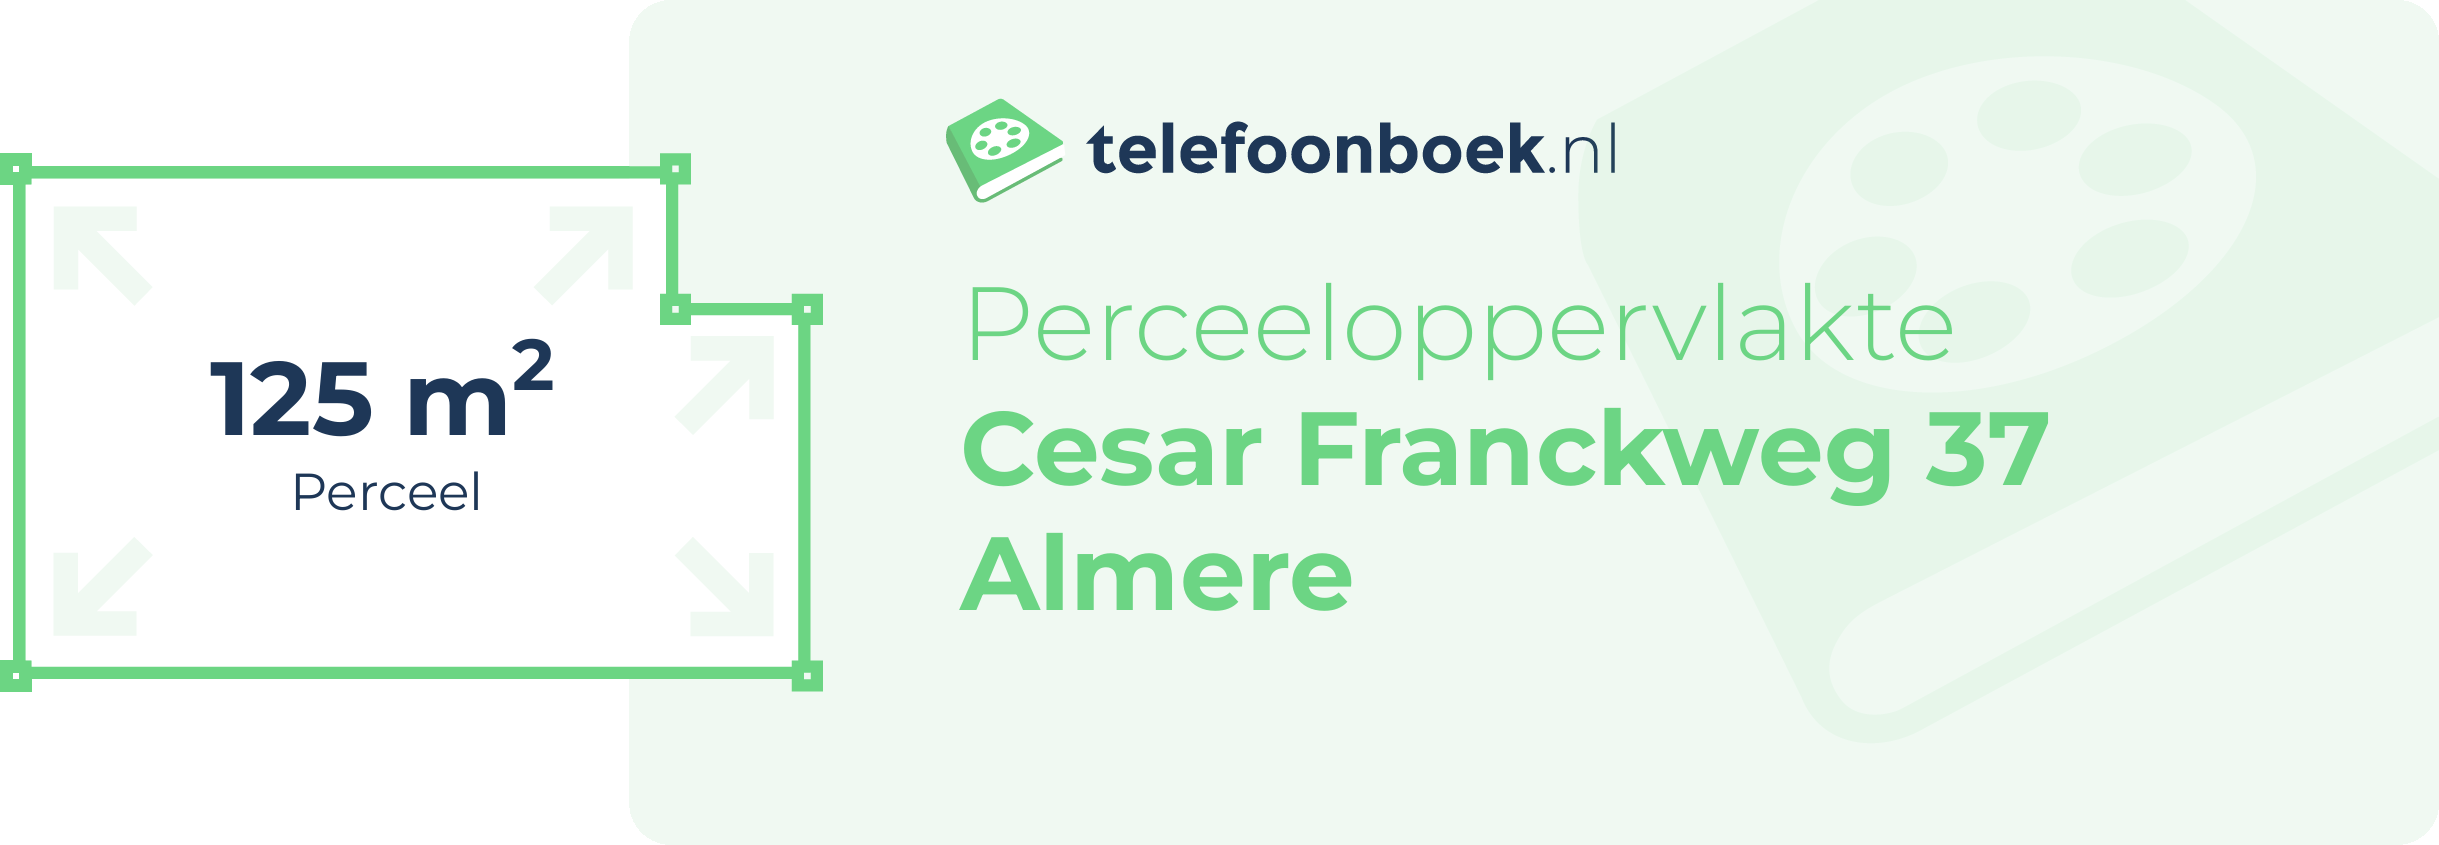 Perceeloppervlakte Cesar Franckweg 37 Almere